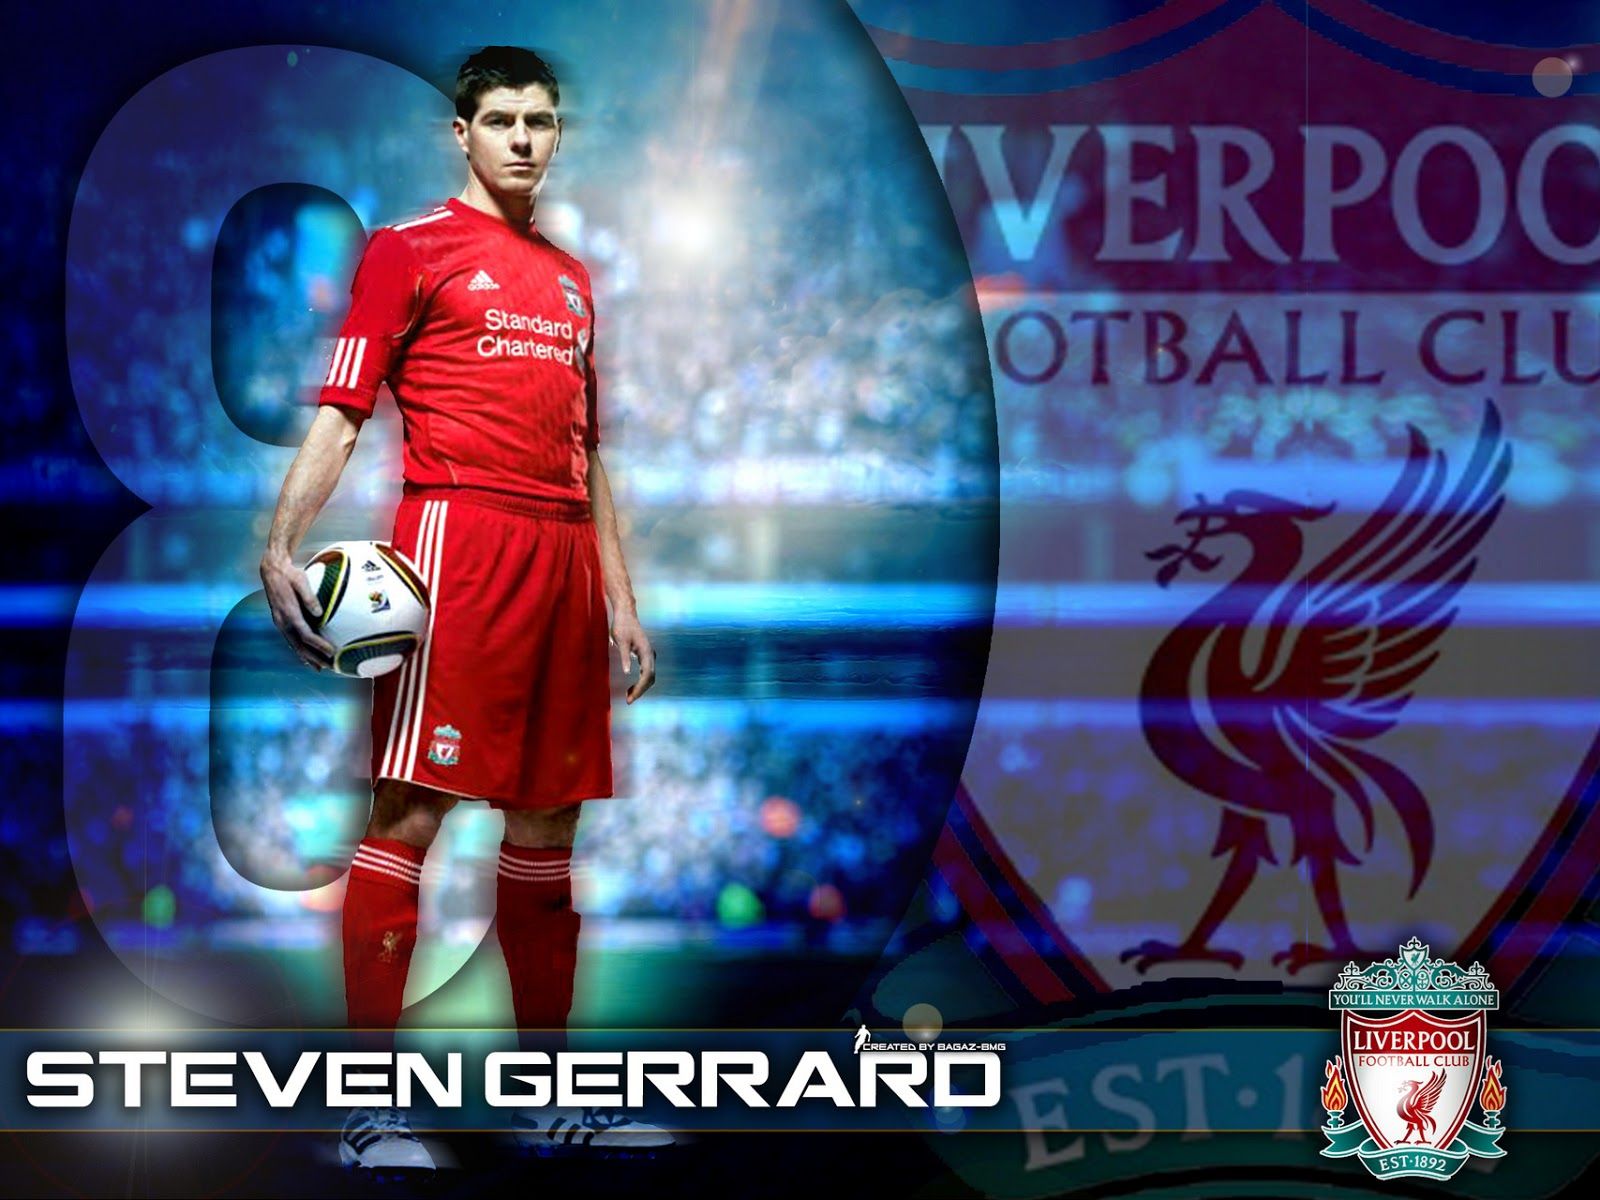 Steven+Gerrard+New+HD+Wallpaper+2013-2014+04.jpg